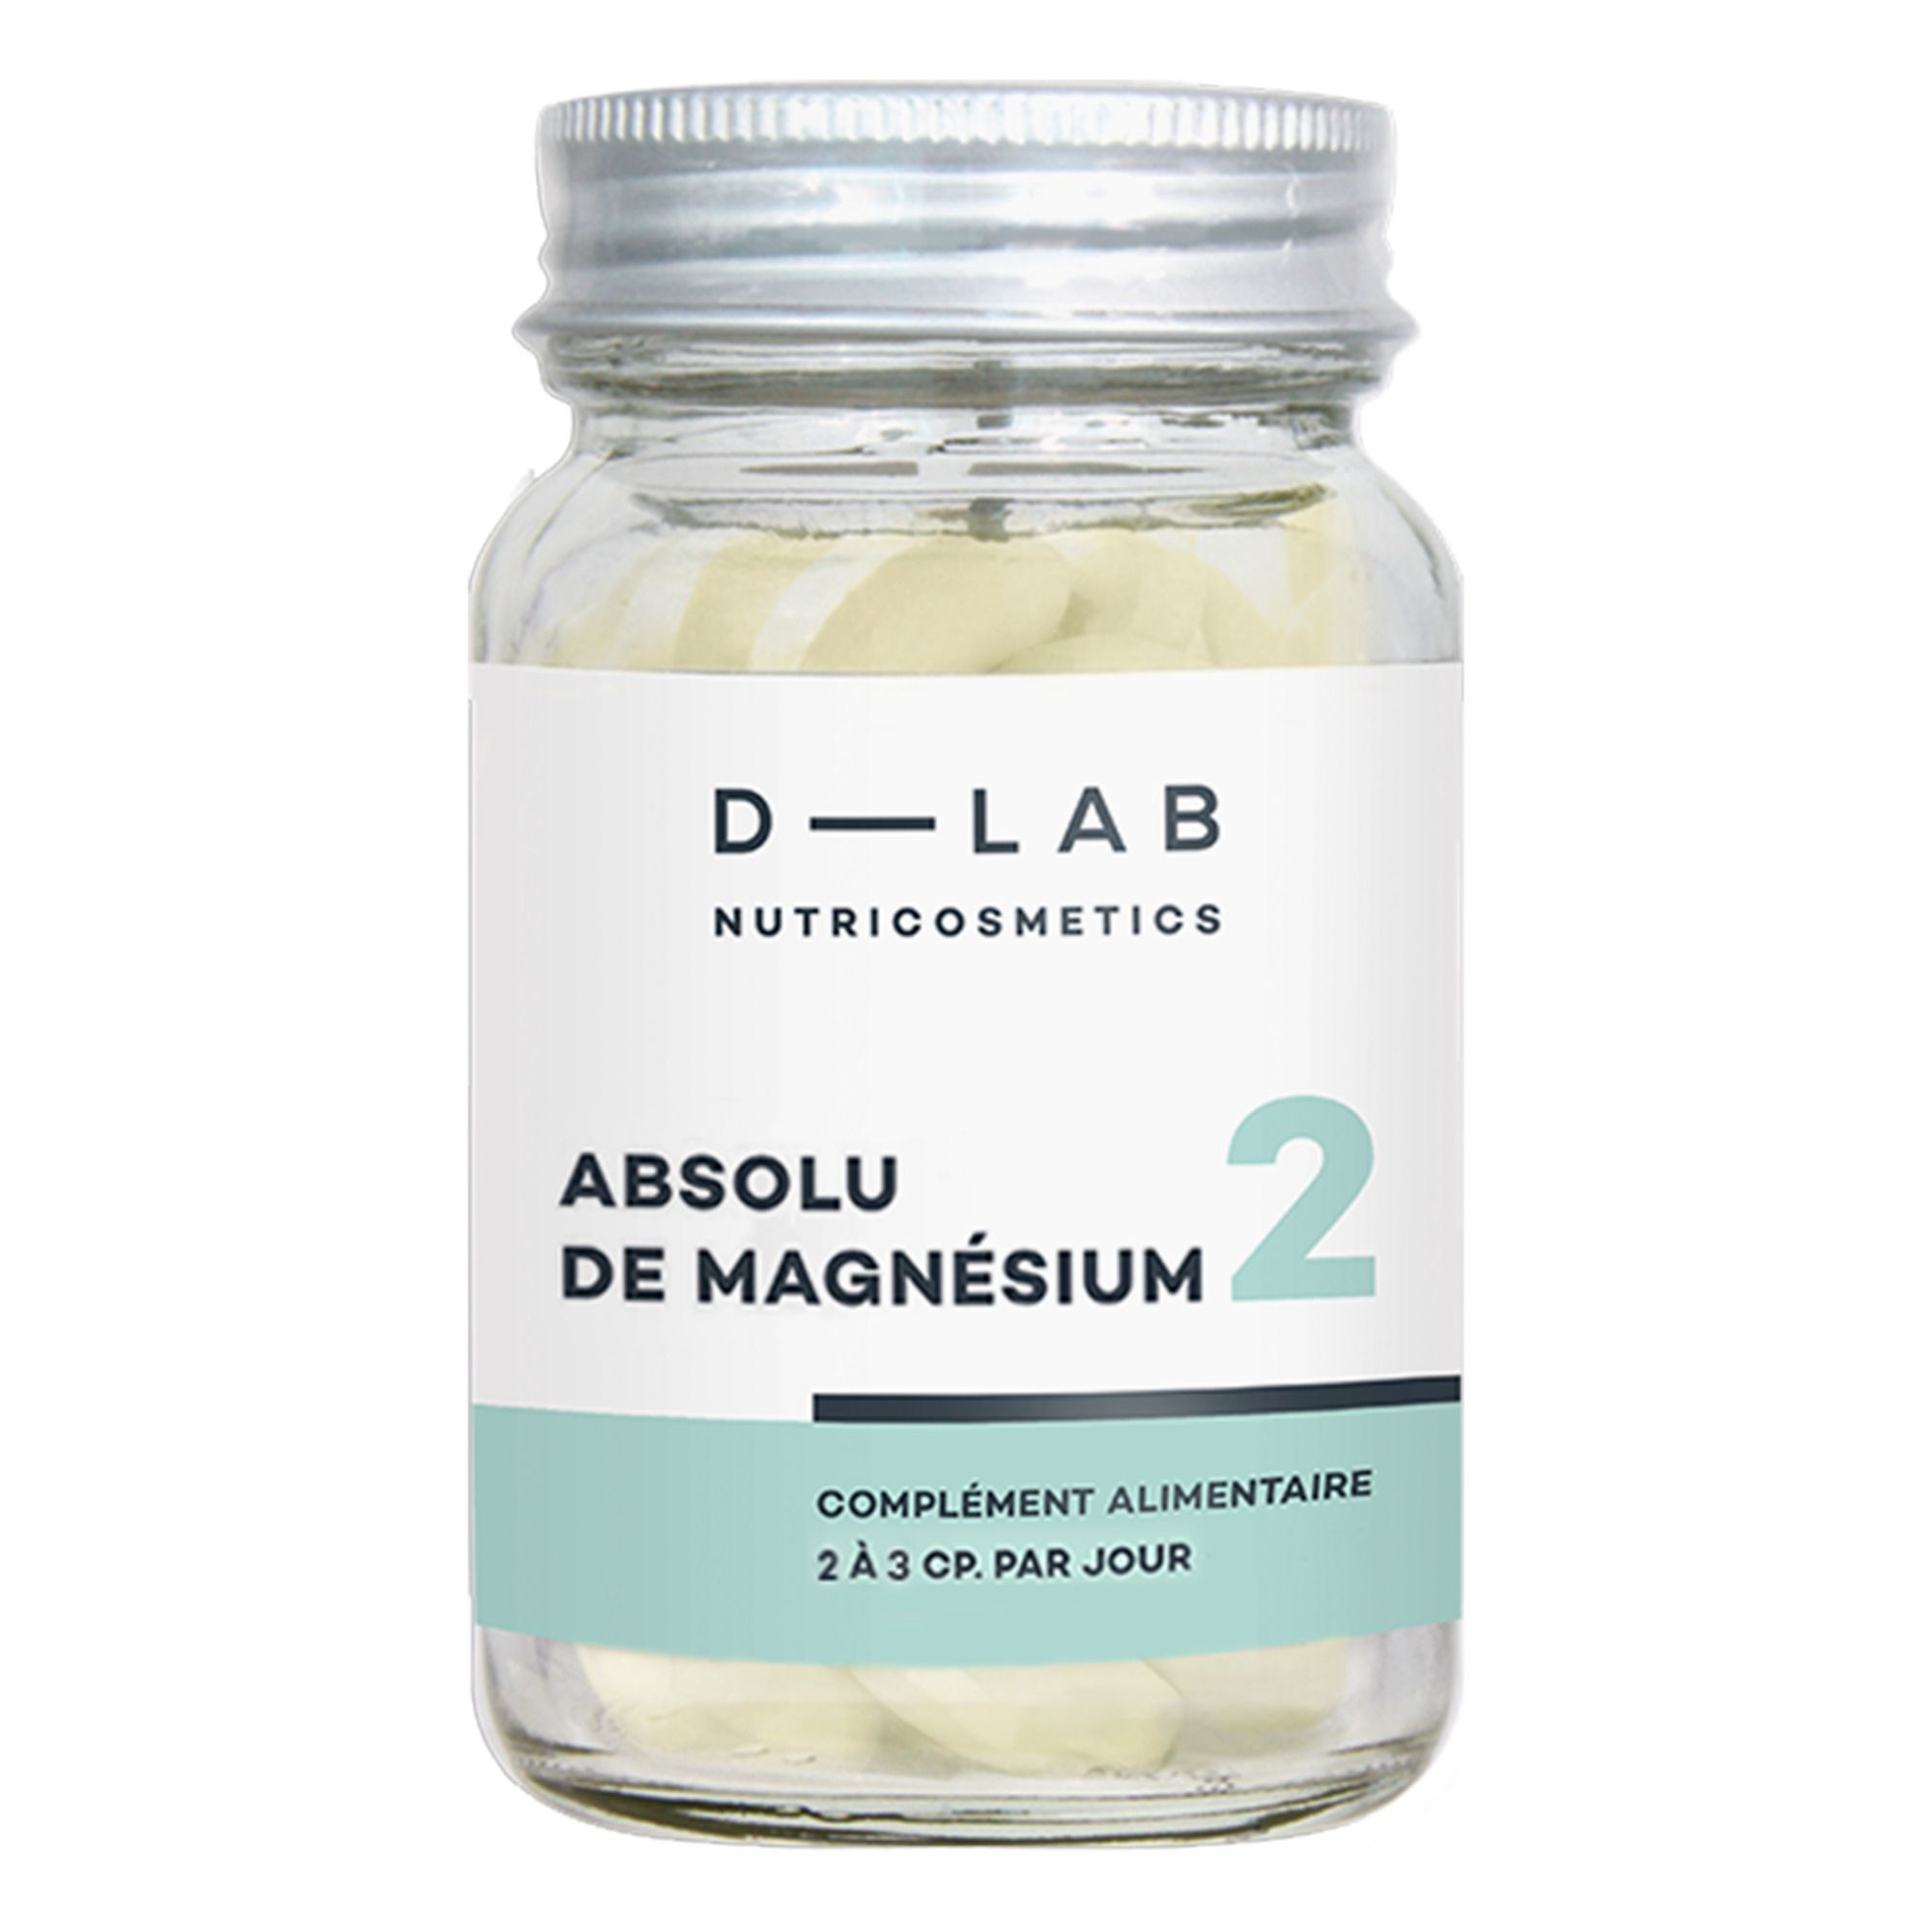 D-LAB NUTRICOSMETICS - Absolu de Magnésium Complément alimentaire - 1 mois